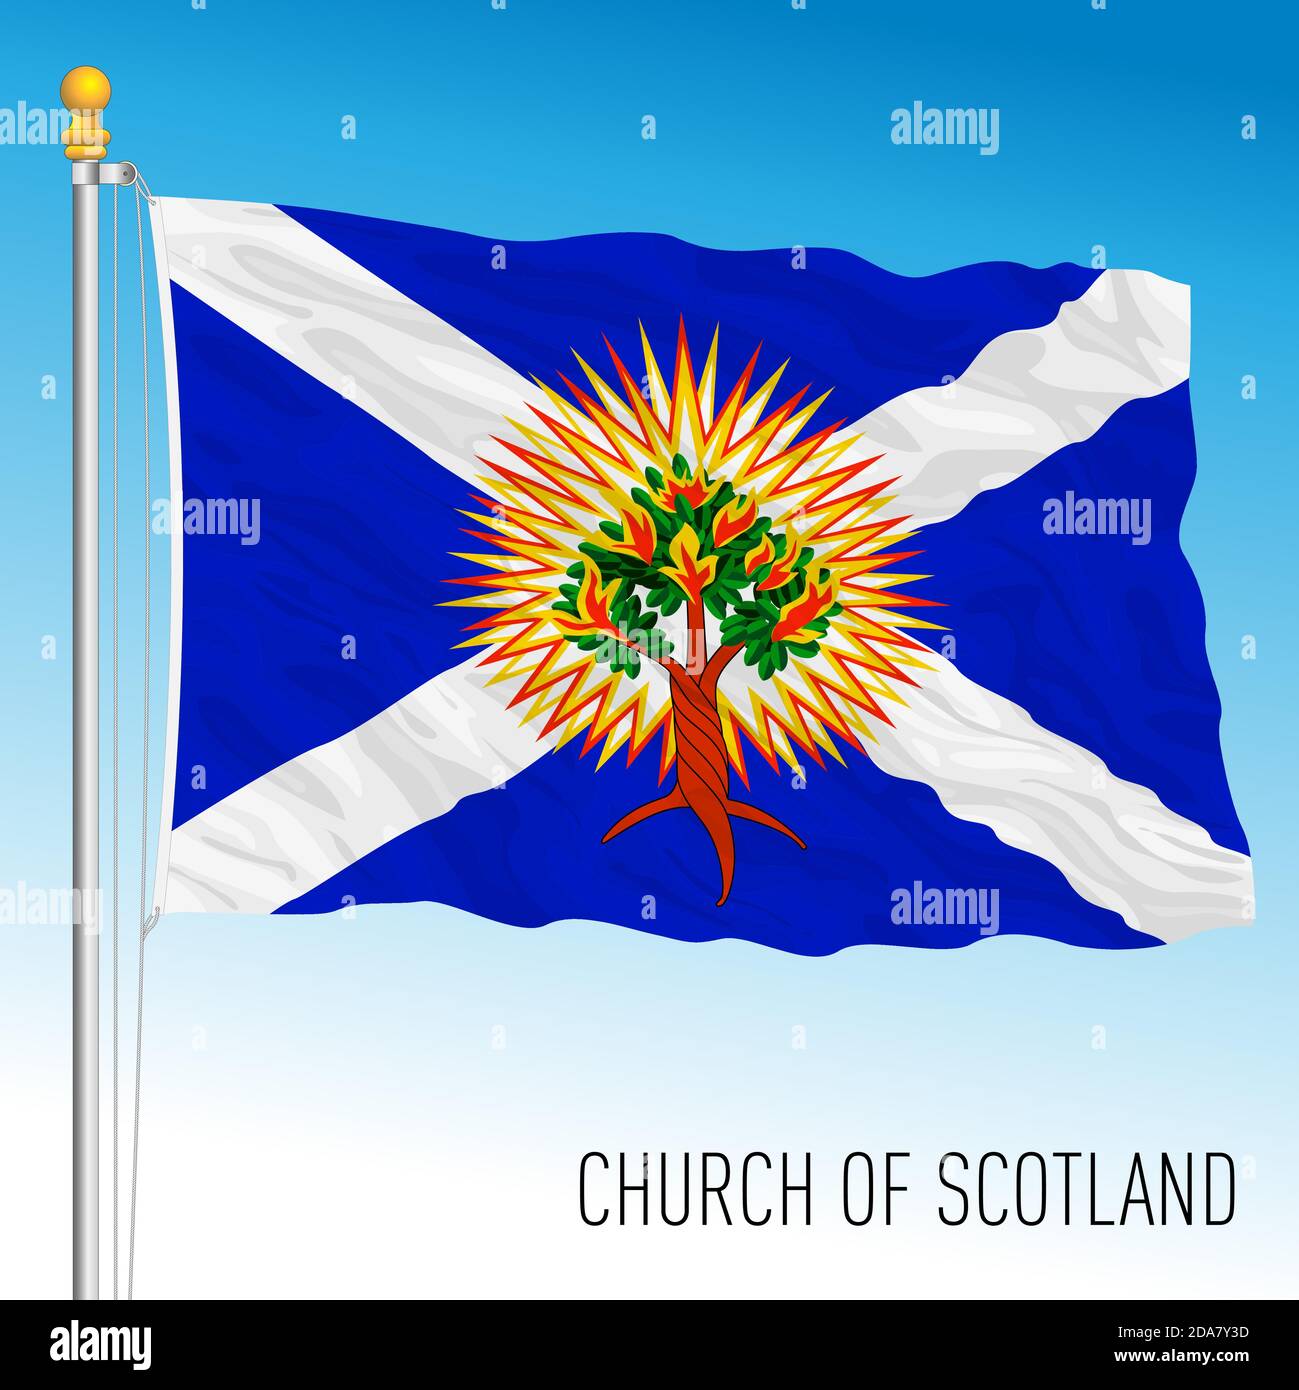 Church of Scotland Flagge, UK, Vektorgrafik Stock Vektor